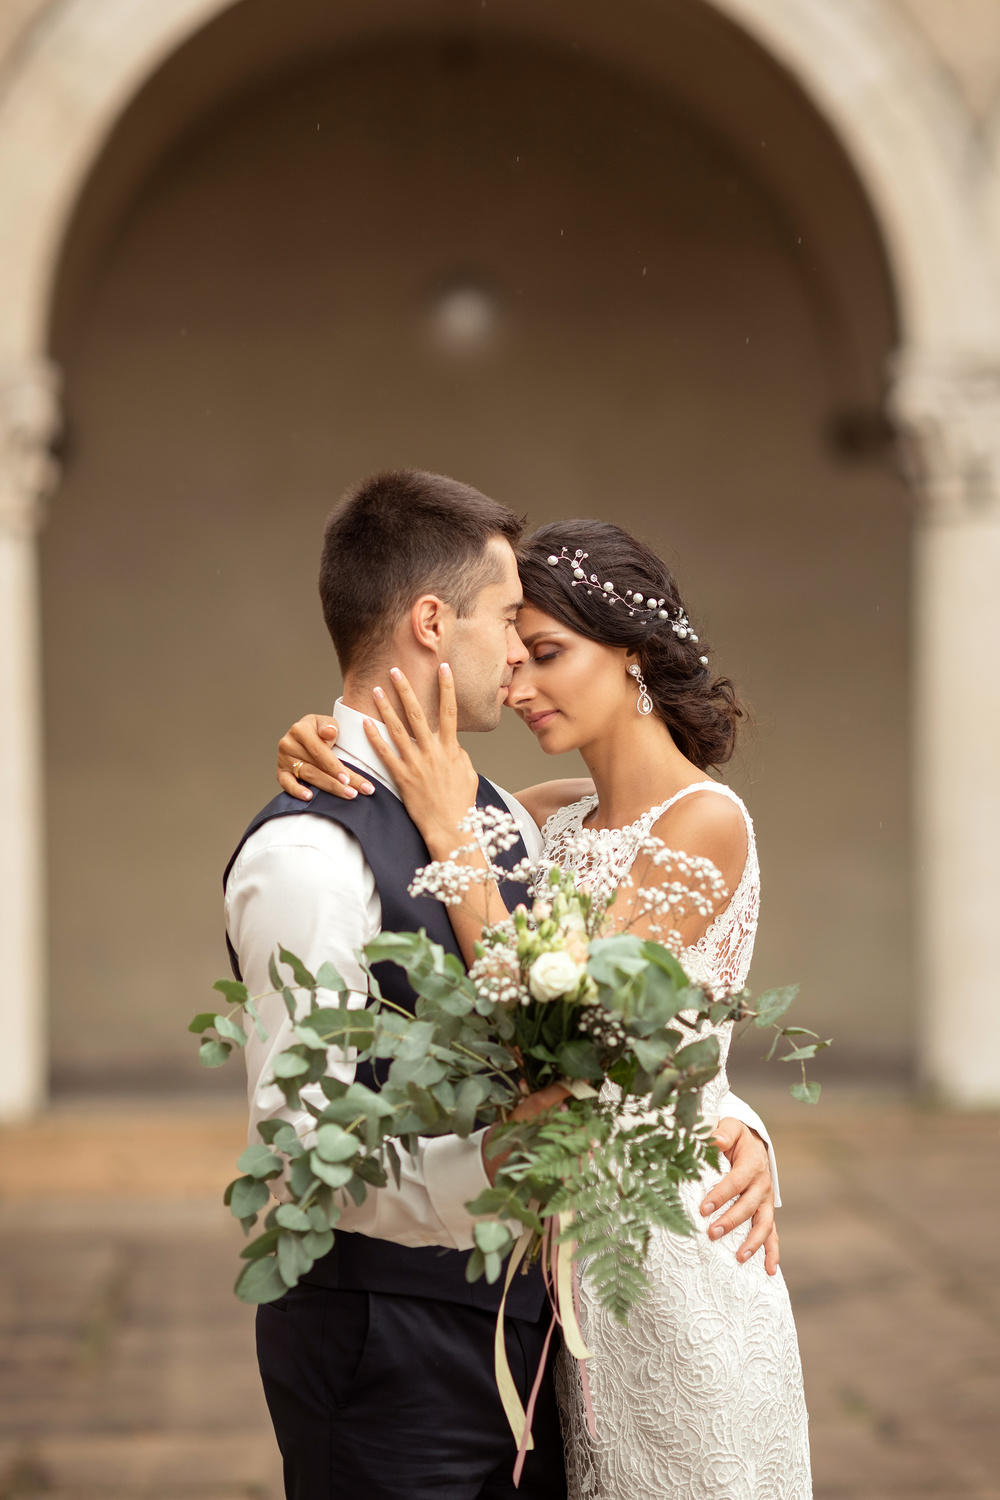 Wedding Fotograf in München